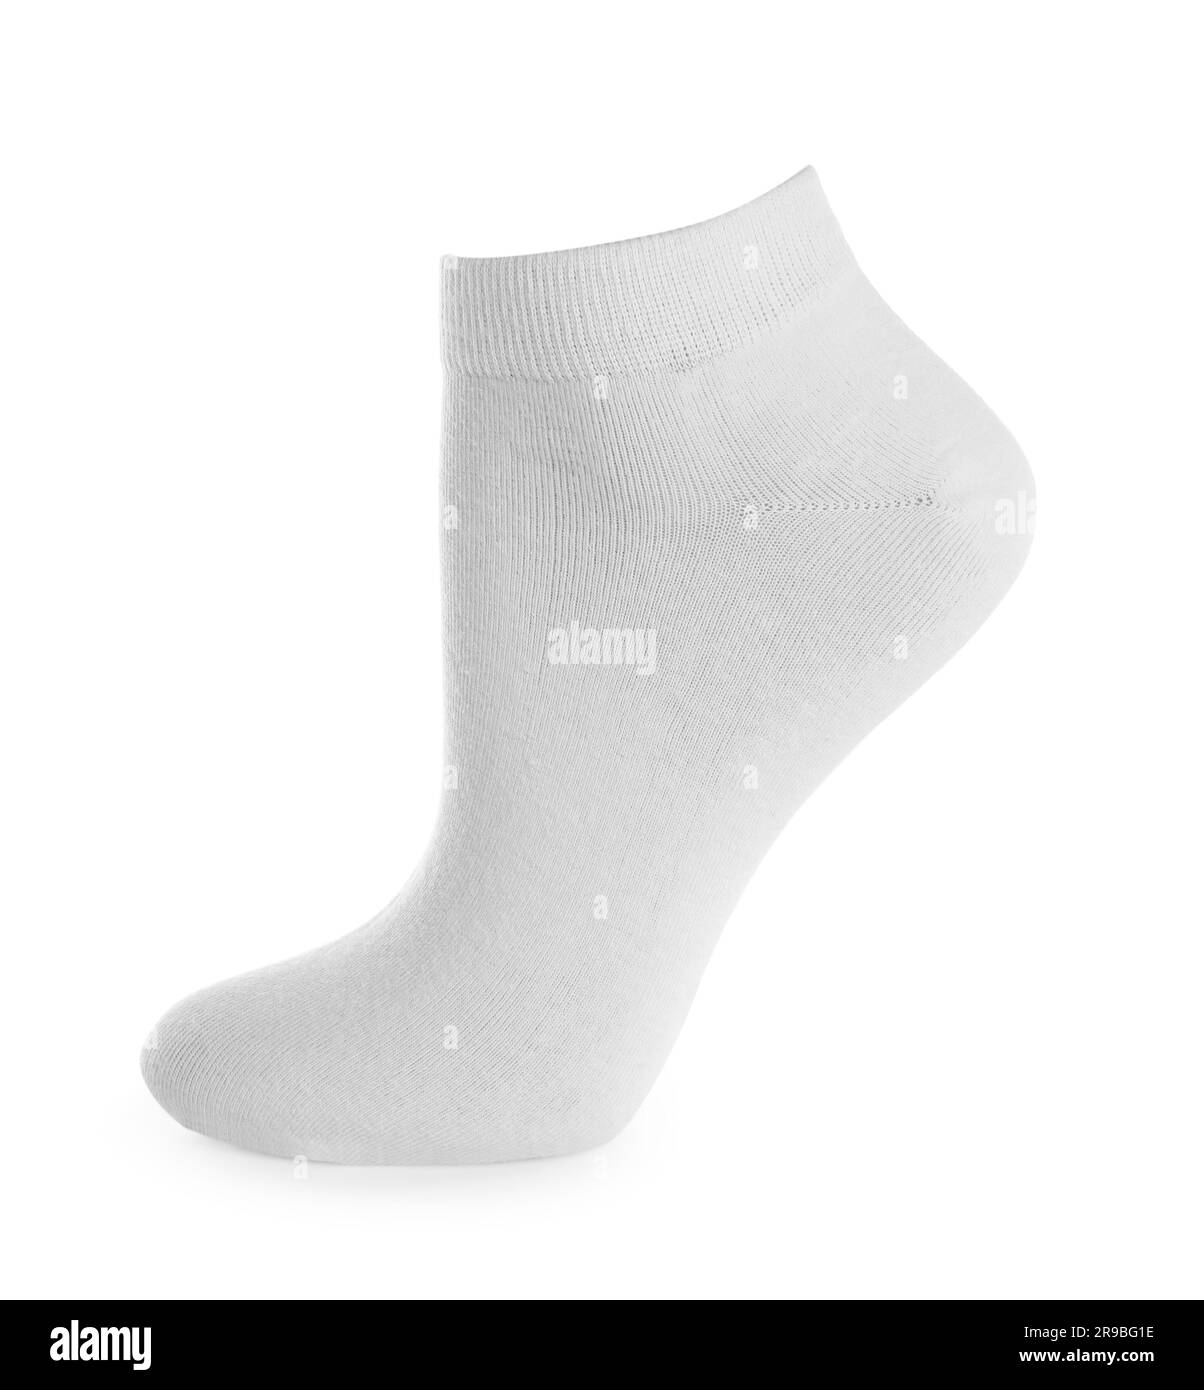 Eine stylische, saubere Socke, isoliert auf Weiß Stockfoto